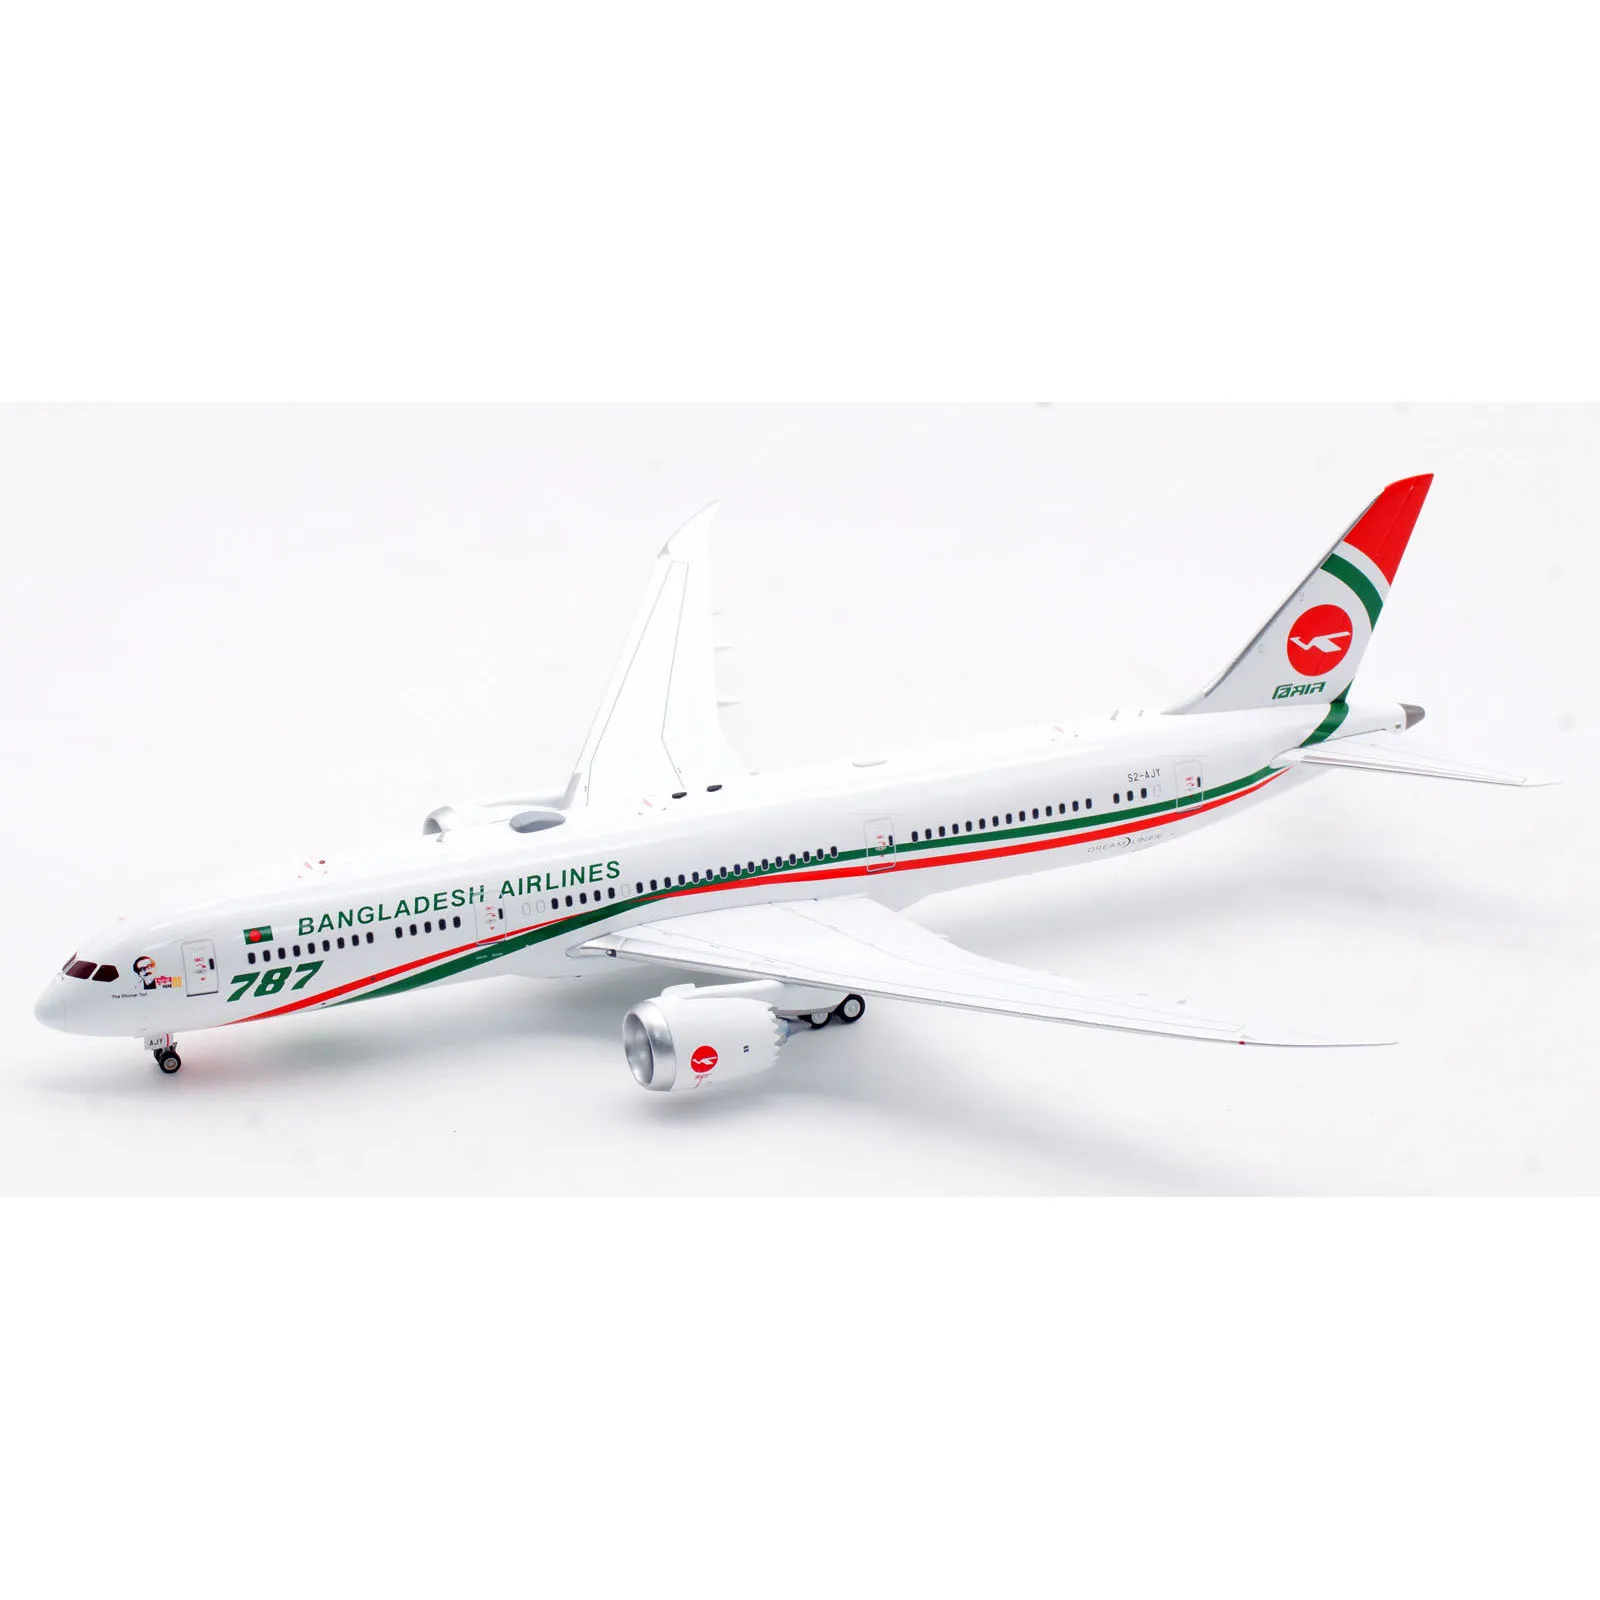 Infalloy koleksi hadiah pesawat INFLIGHT 1:200 Biman Bangladesh Airlines B787-9 menjulang Model pesawat terbang Diecast S2-AJY